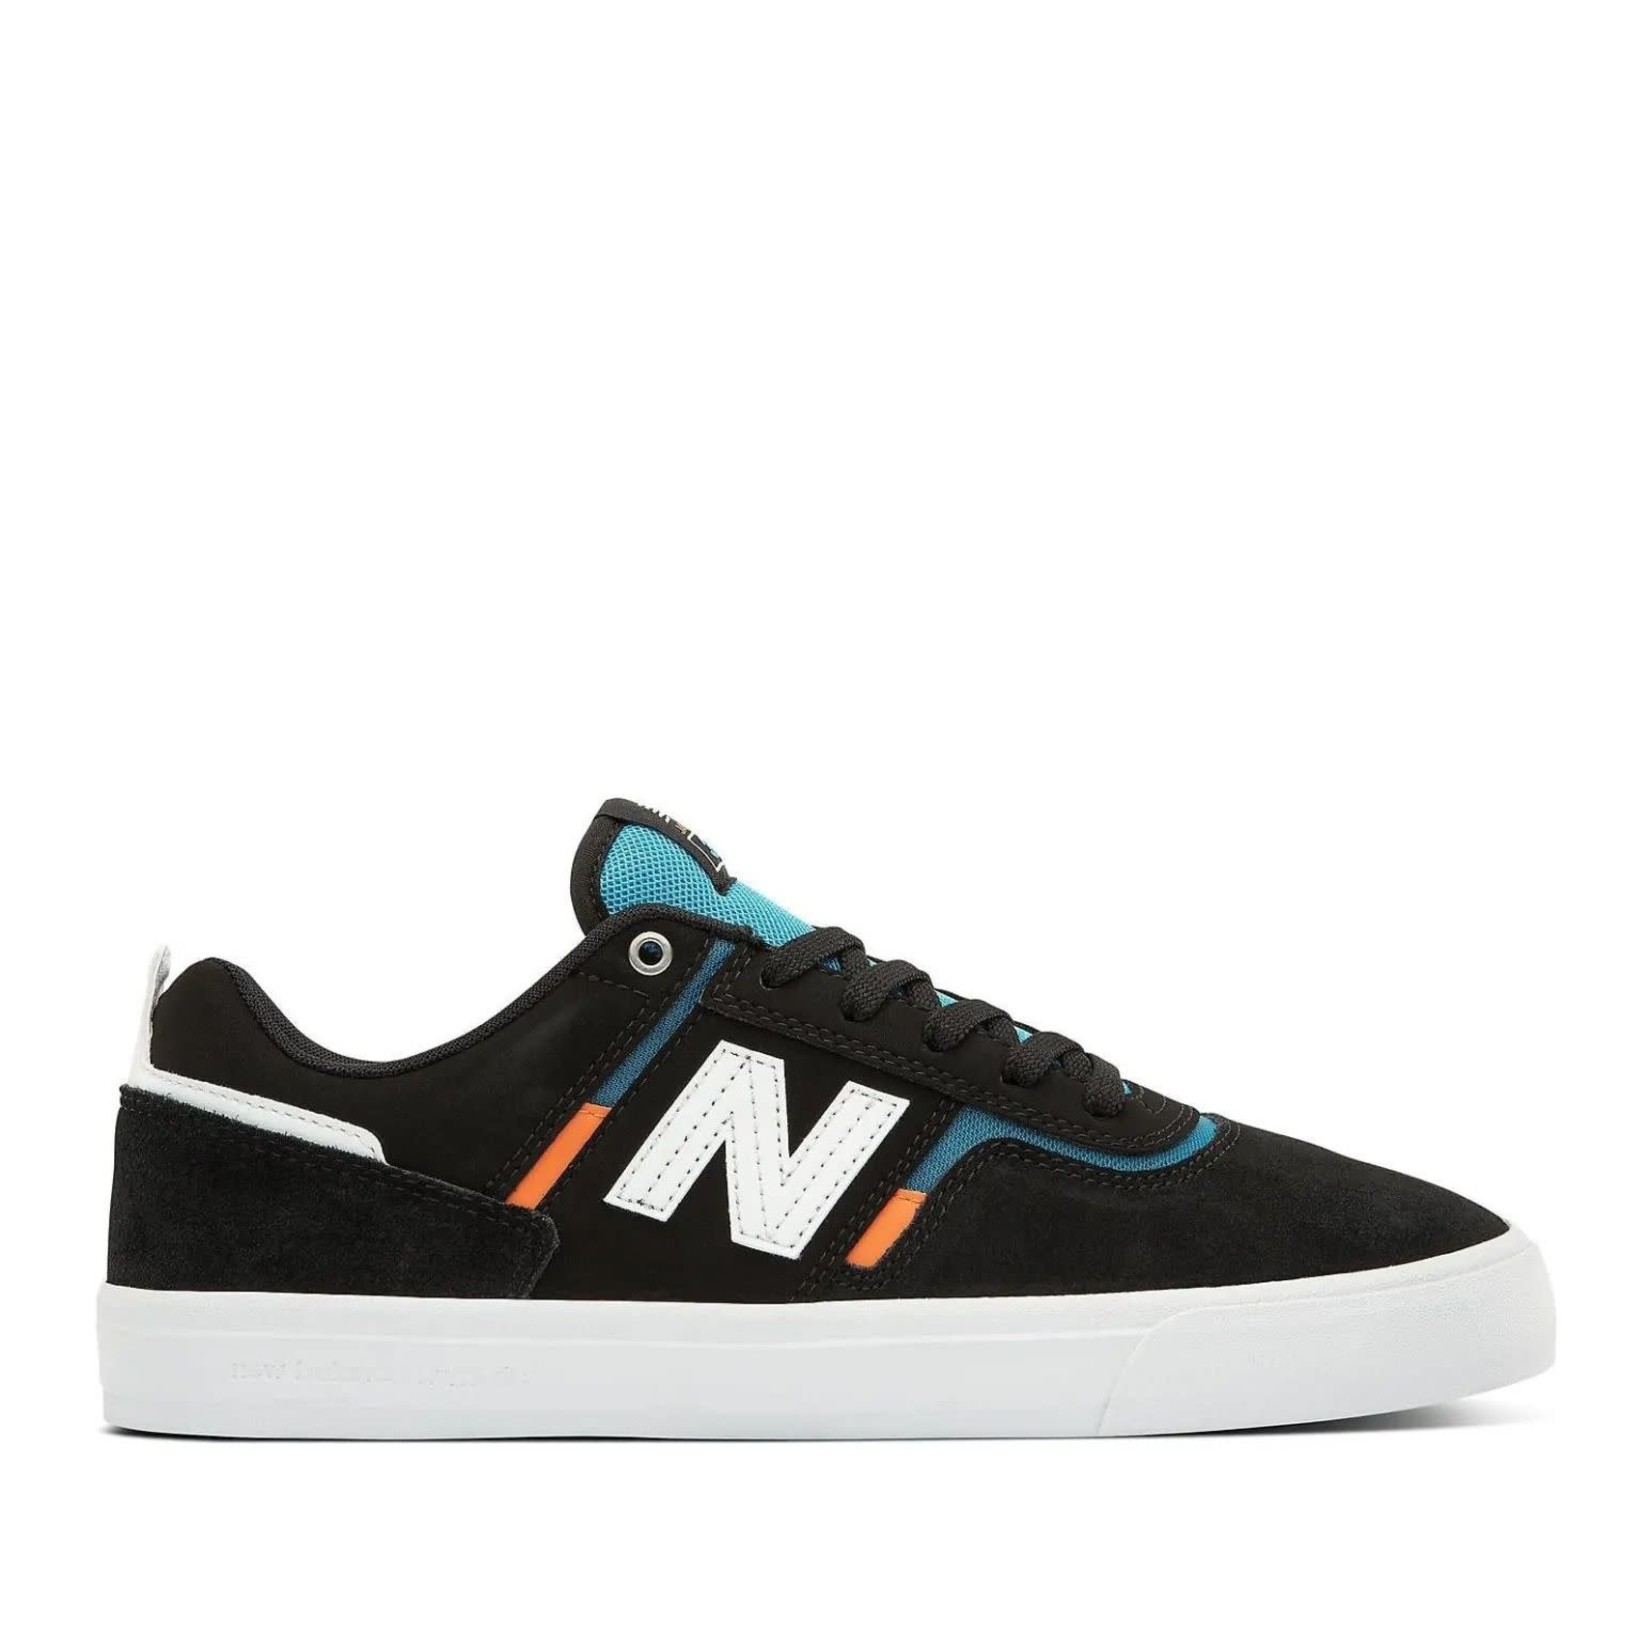 New Balance New Balance 306 Jamie Foy Skate Shoes -black/blue/orange